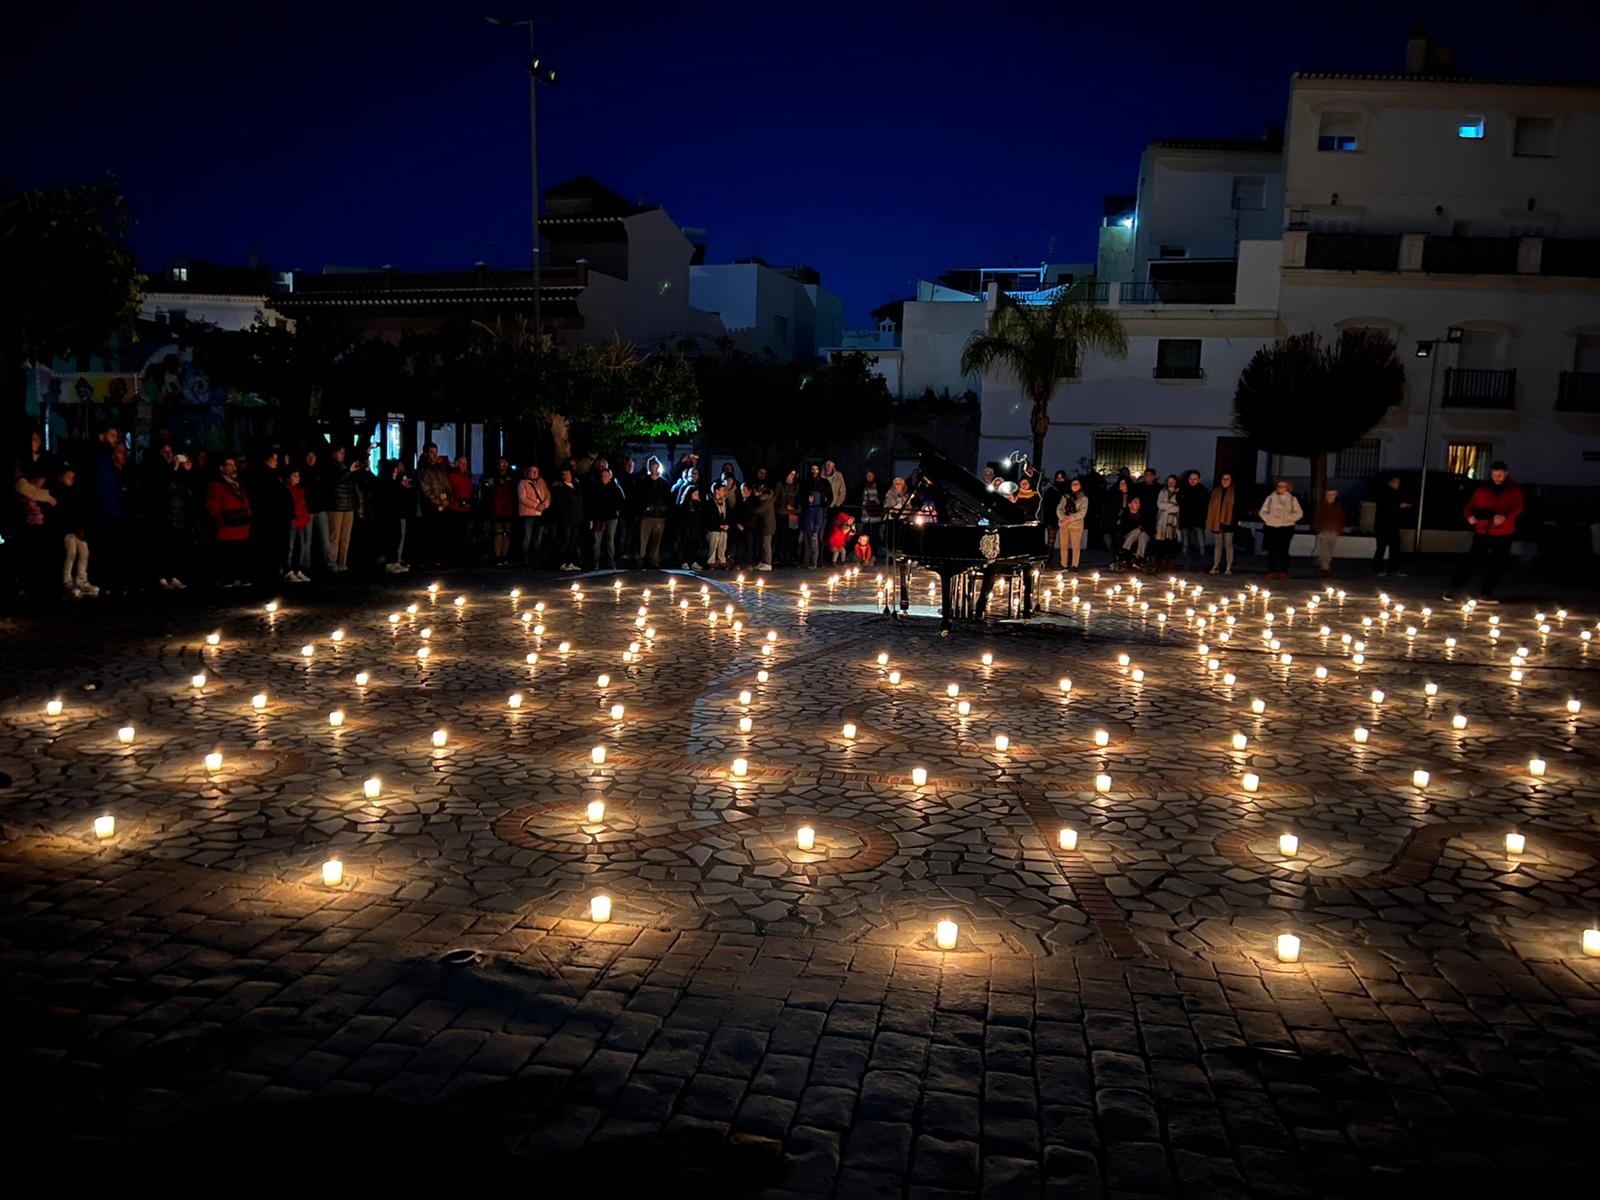 Miles de candelas iluminan la noche de Lobres.